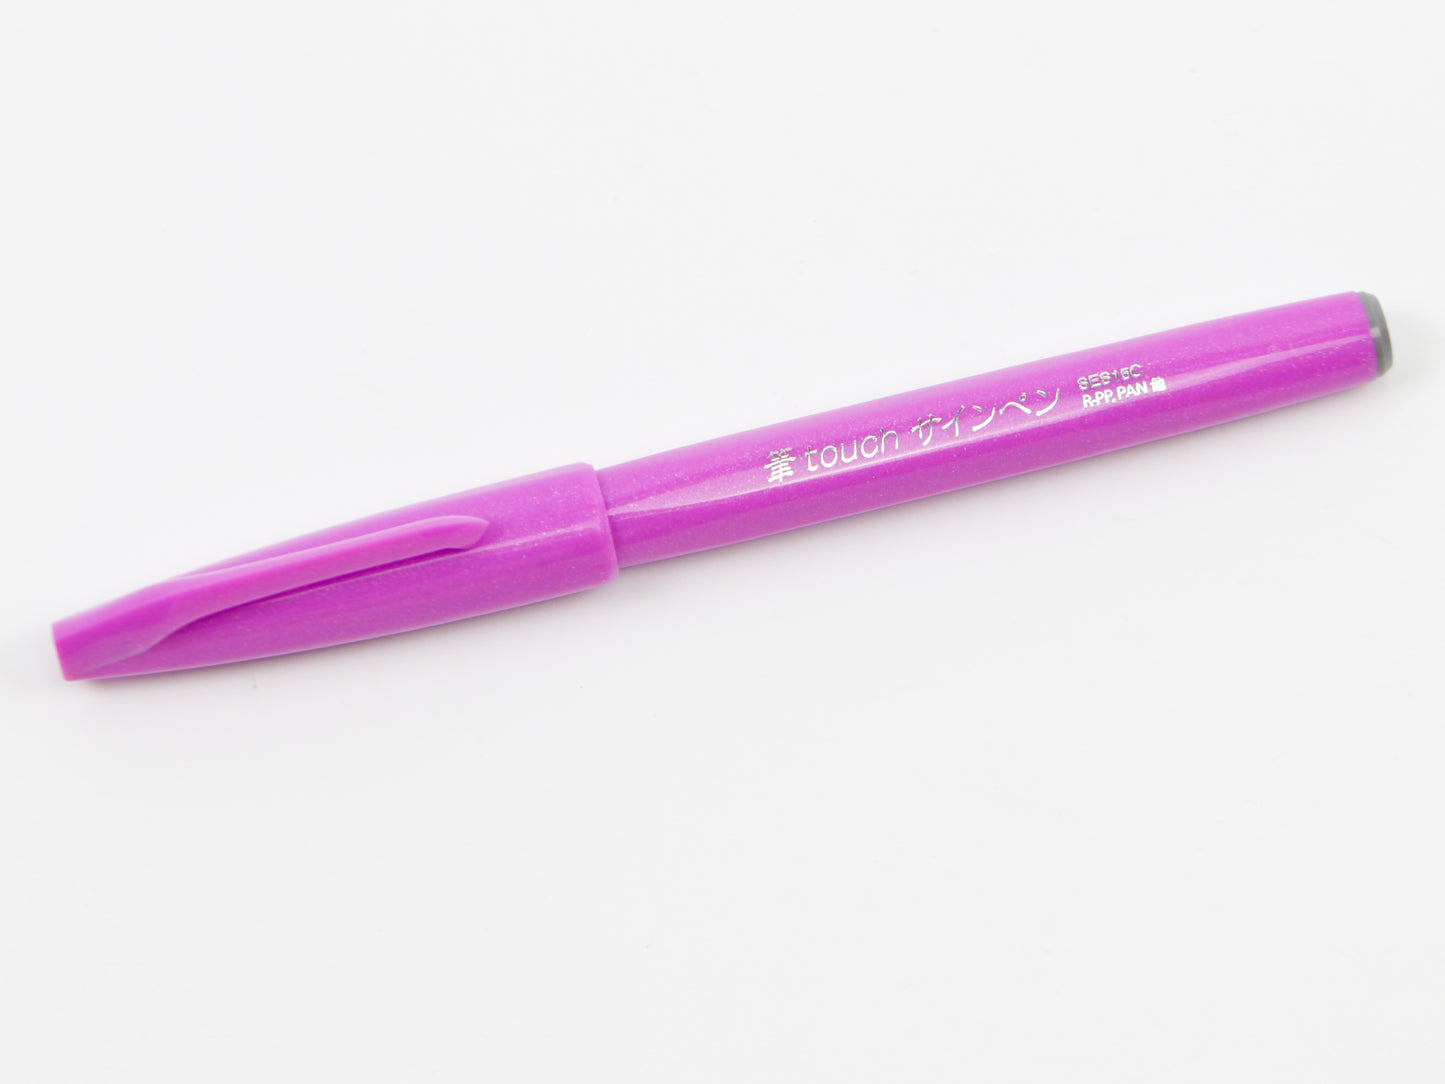 Pentel Fude Touch Sign Pen Soft Colors